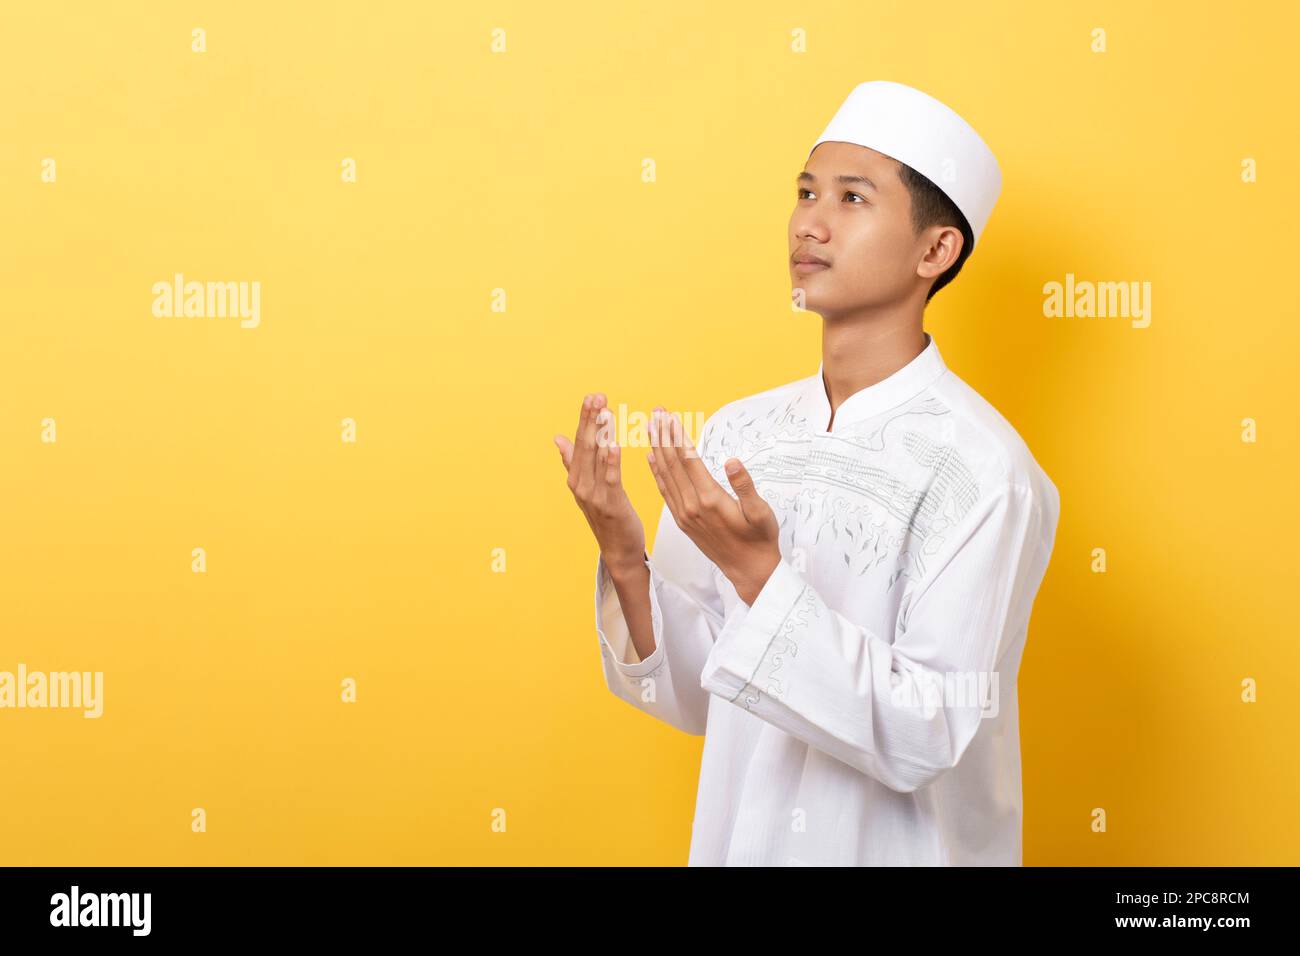 prière de l'homme islam asiatique, jeune musulman priant, concept